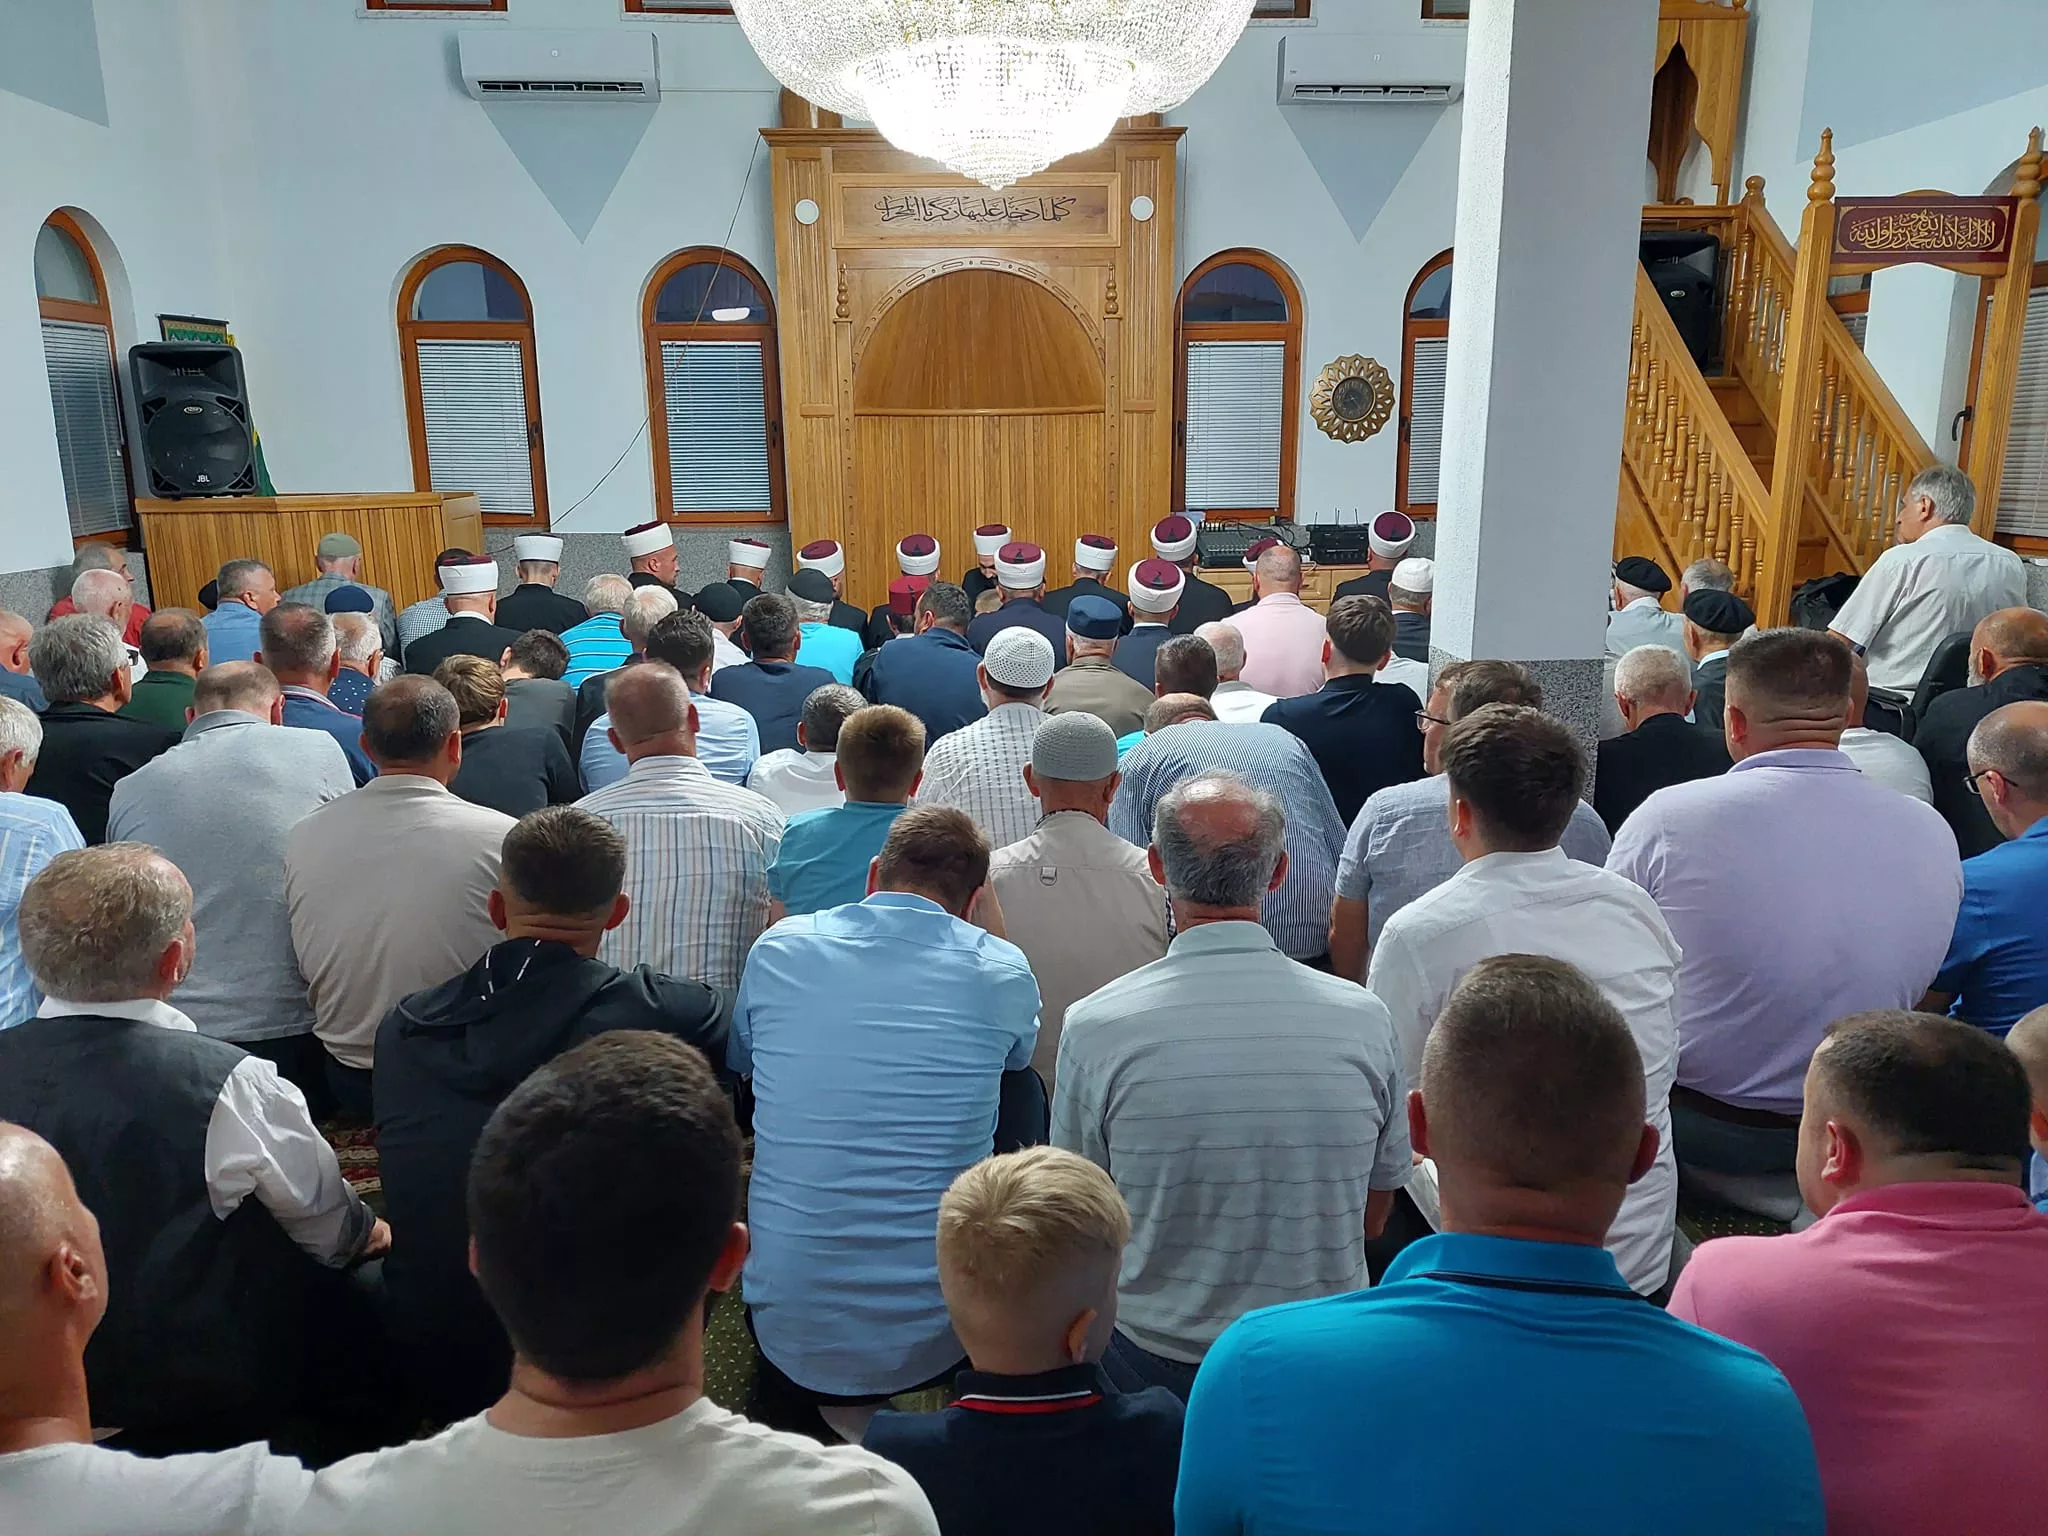 Džamija u Tršiću ispunjena do posljednjeg mjesta na mevludskoj svečanosti, ove nedjelje svečano otvorenje (FOTO)